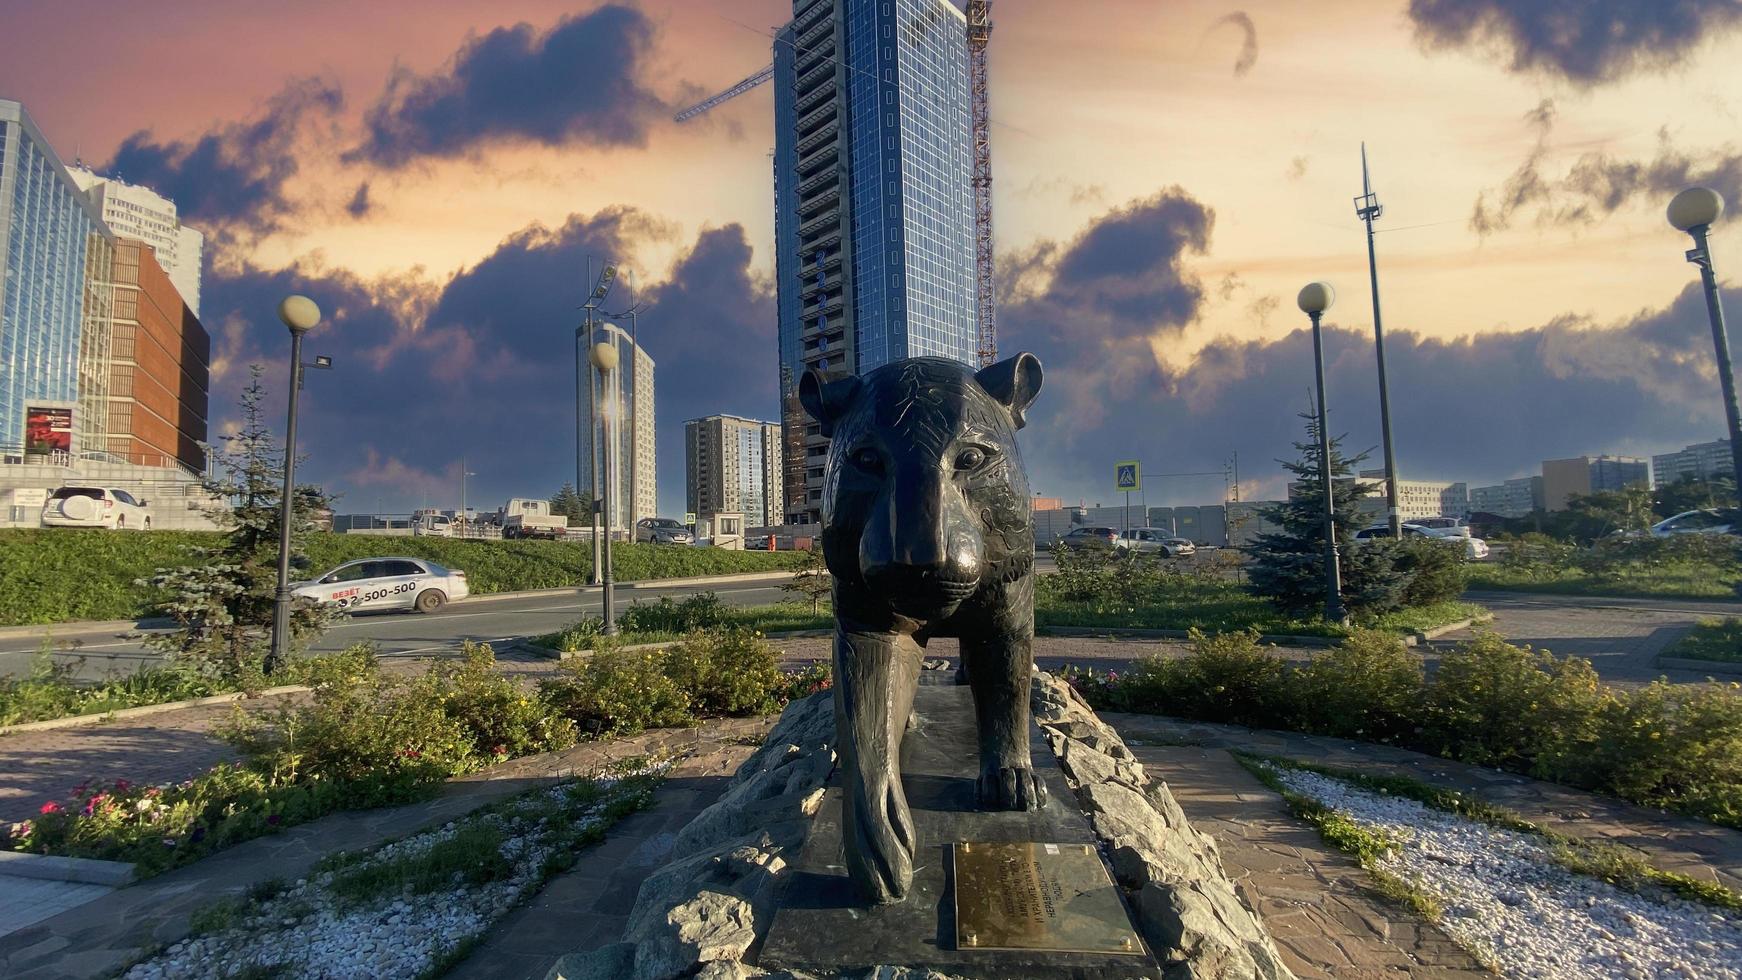 vladivostok, russie - 20 septembre 2022 - paysage urbain avec vue sur la sculpture du tigre. photo